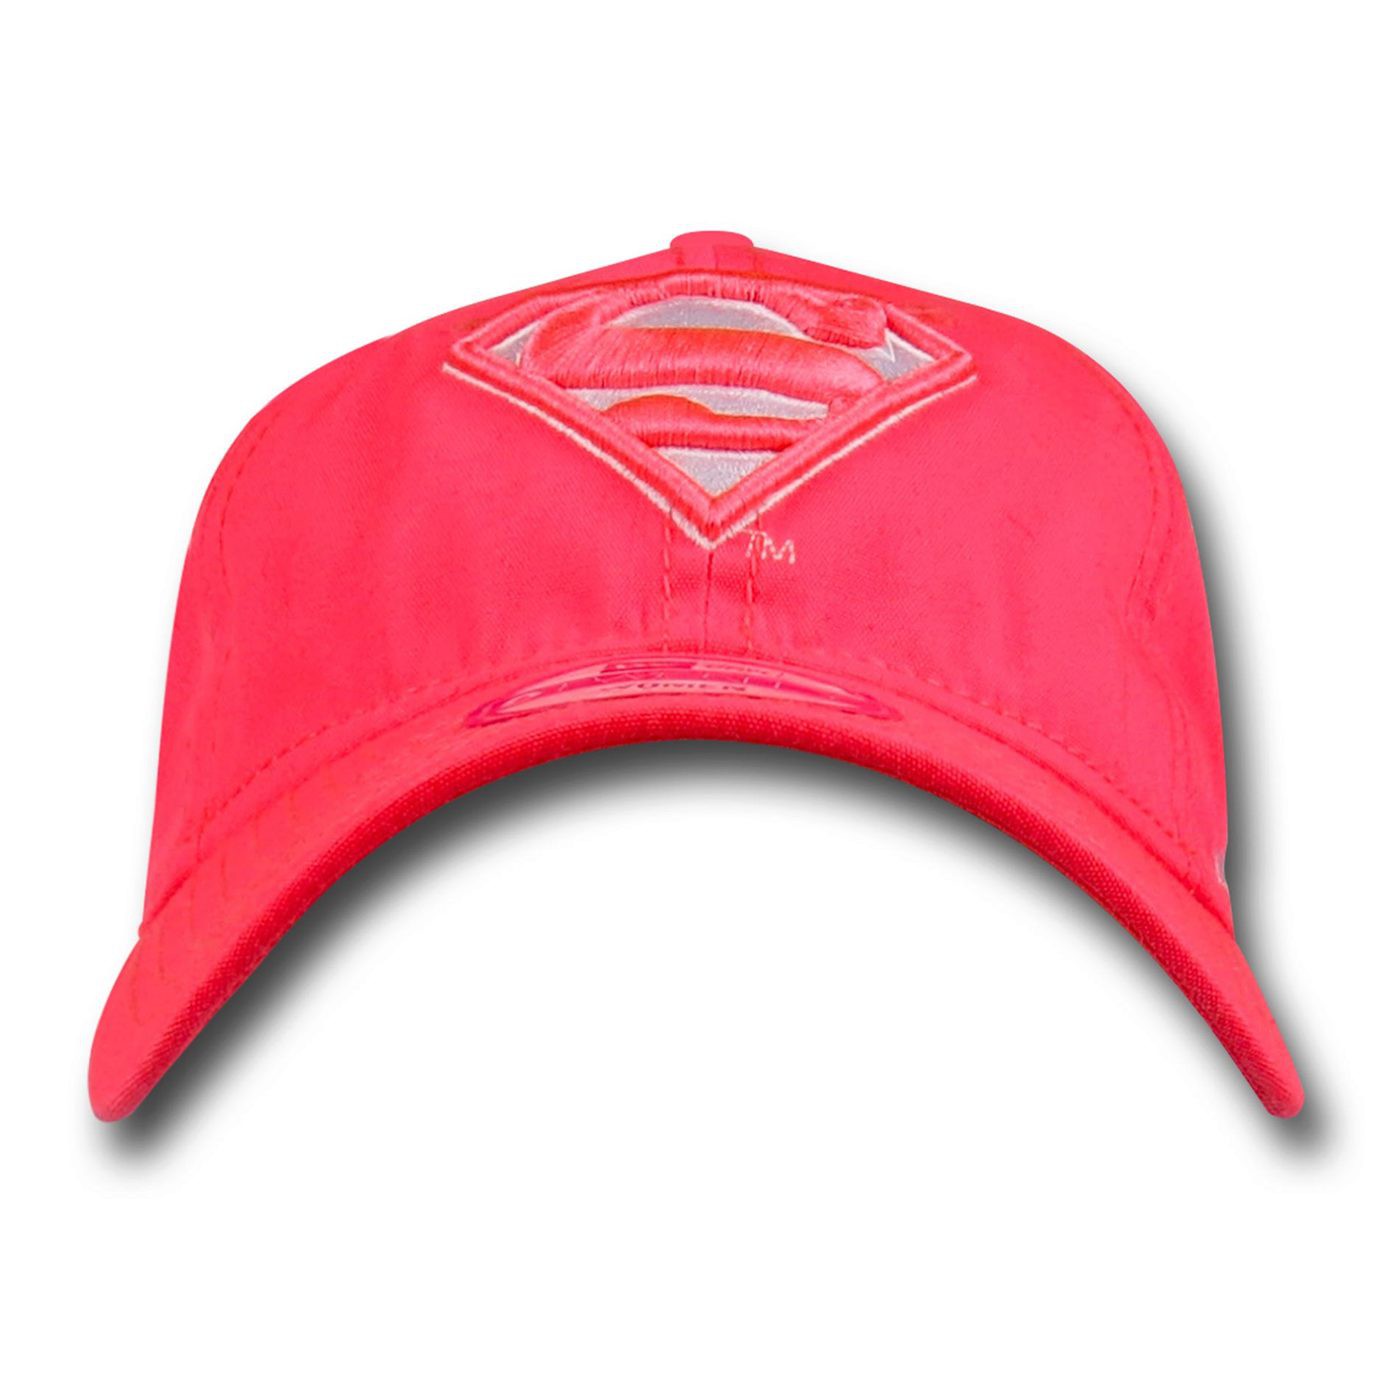 Supergirl Pink 9Twenty Women's Cap